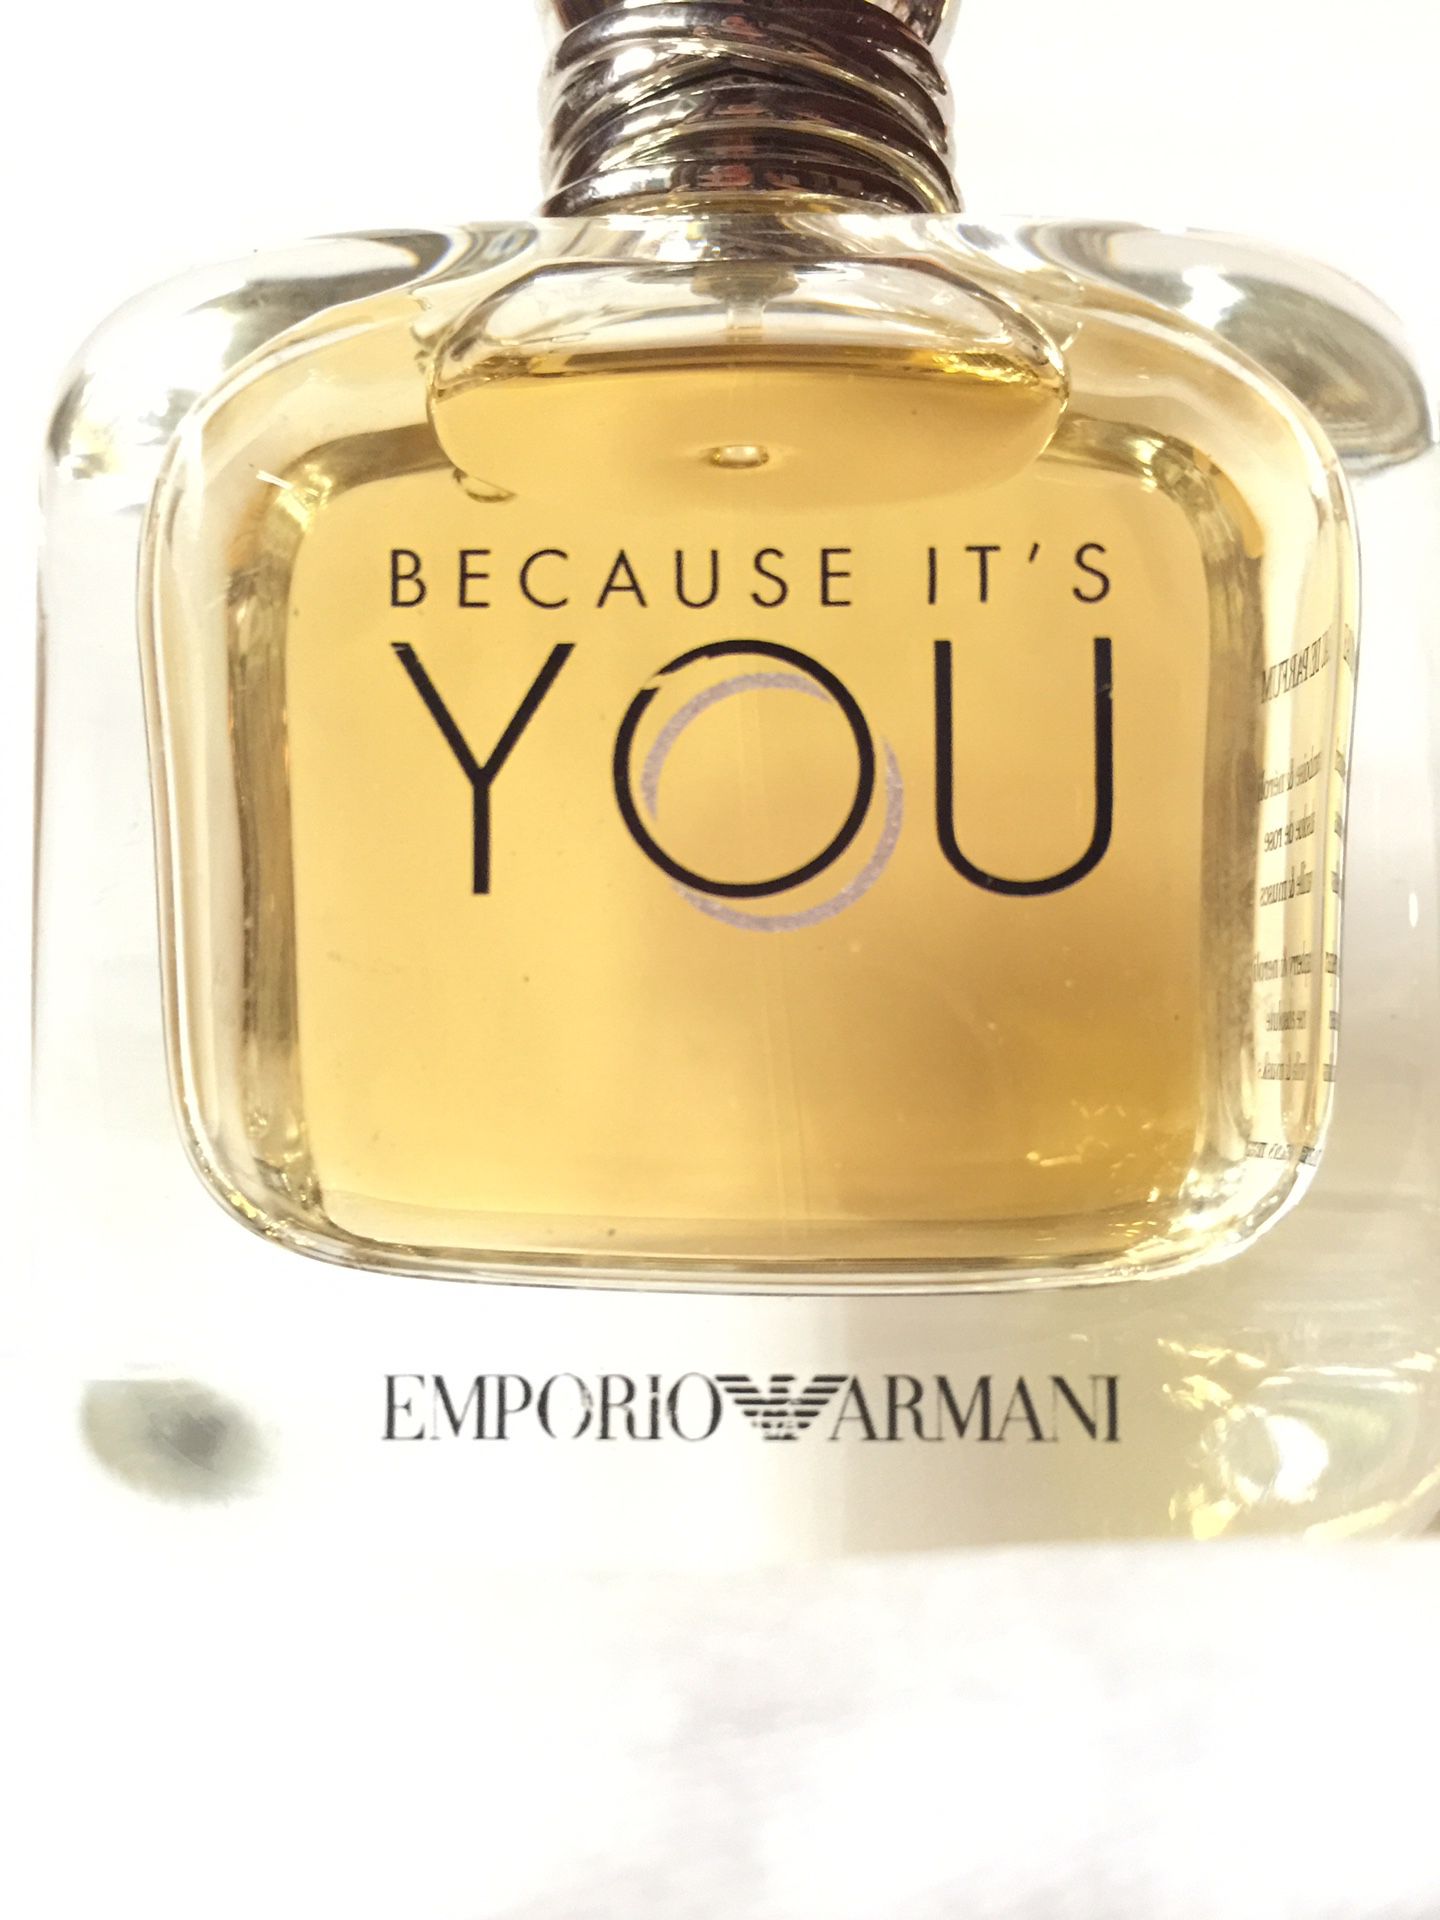 Authentic BECAUSE IT'S YOU by Emporio Armani 3.4oz Eau de Parfum Perfume